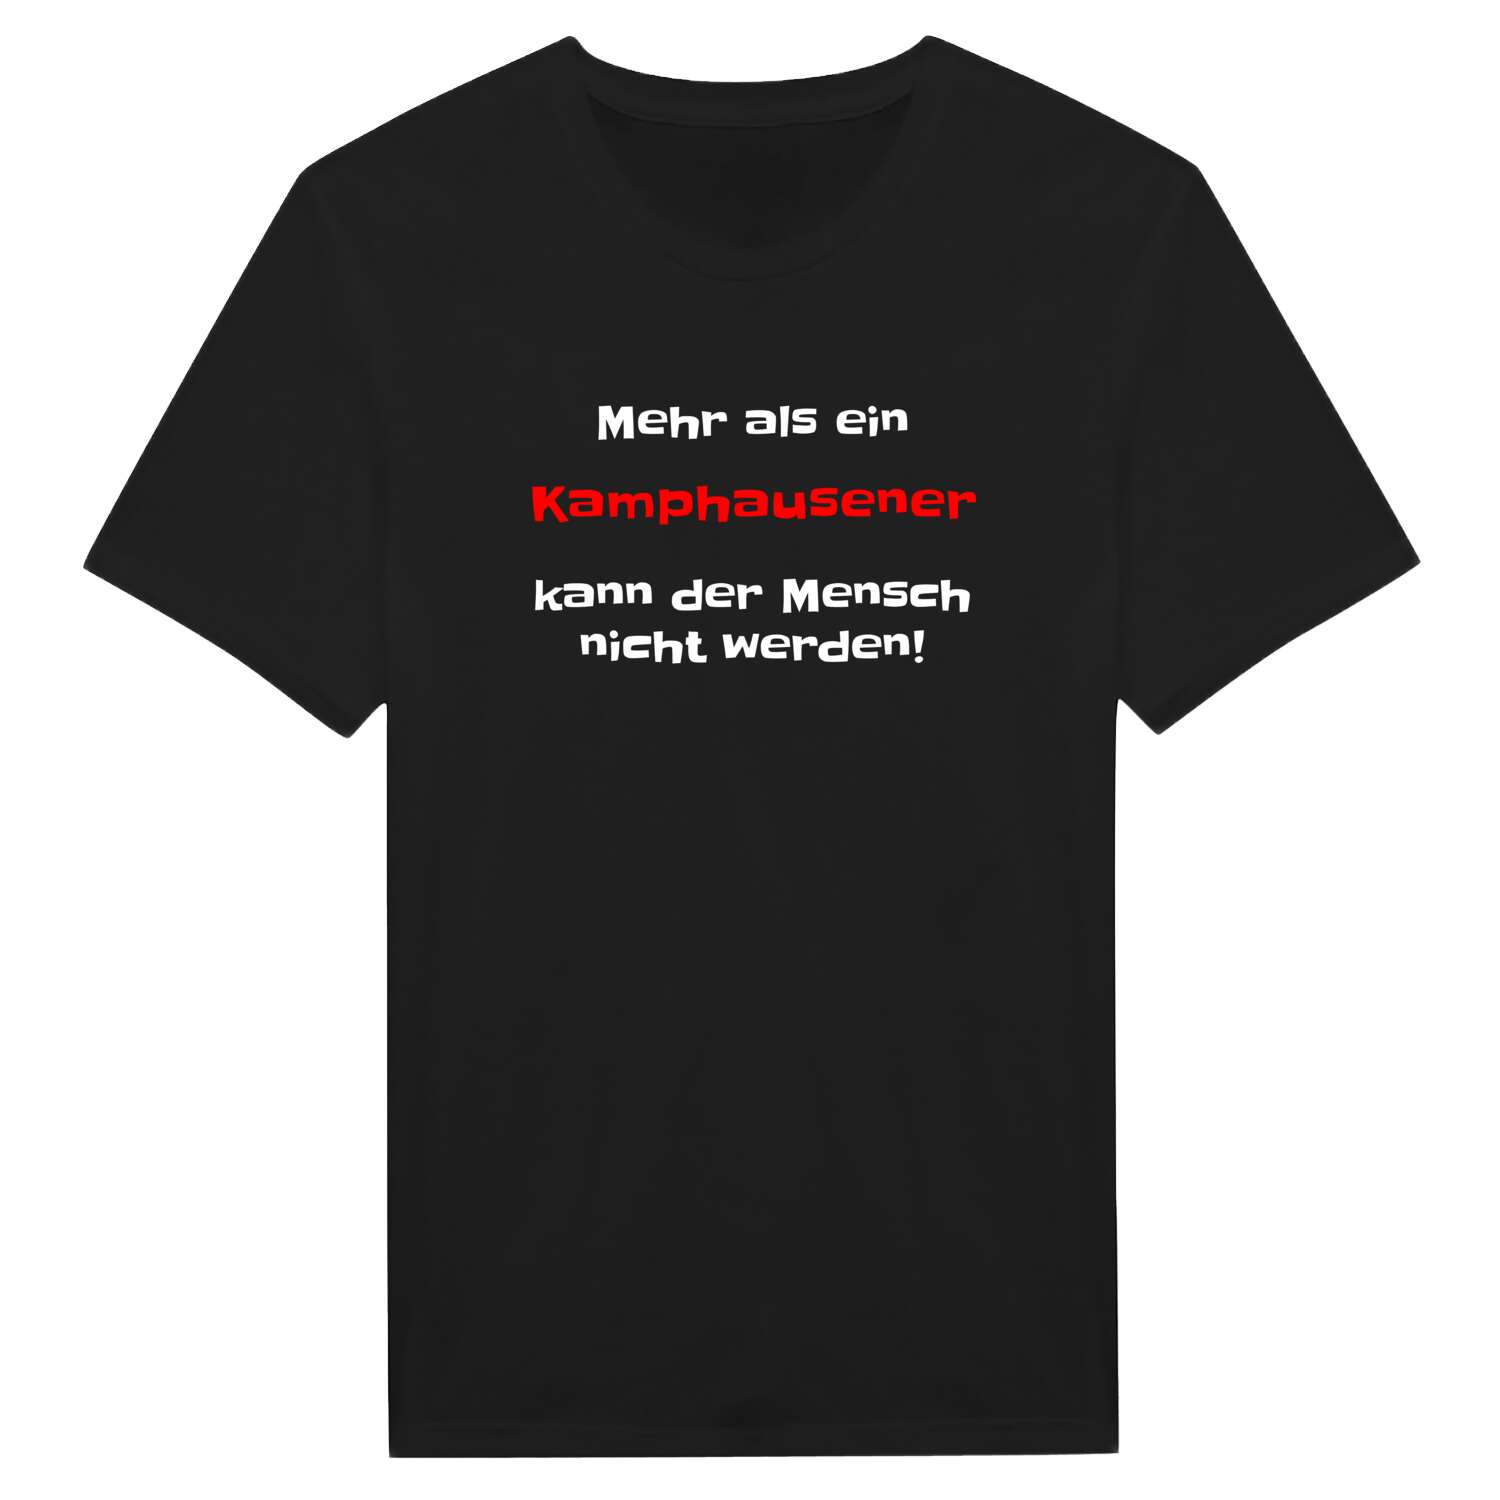 Kamphausen T-Shirt »Mehr als ein«